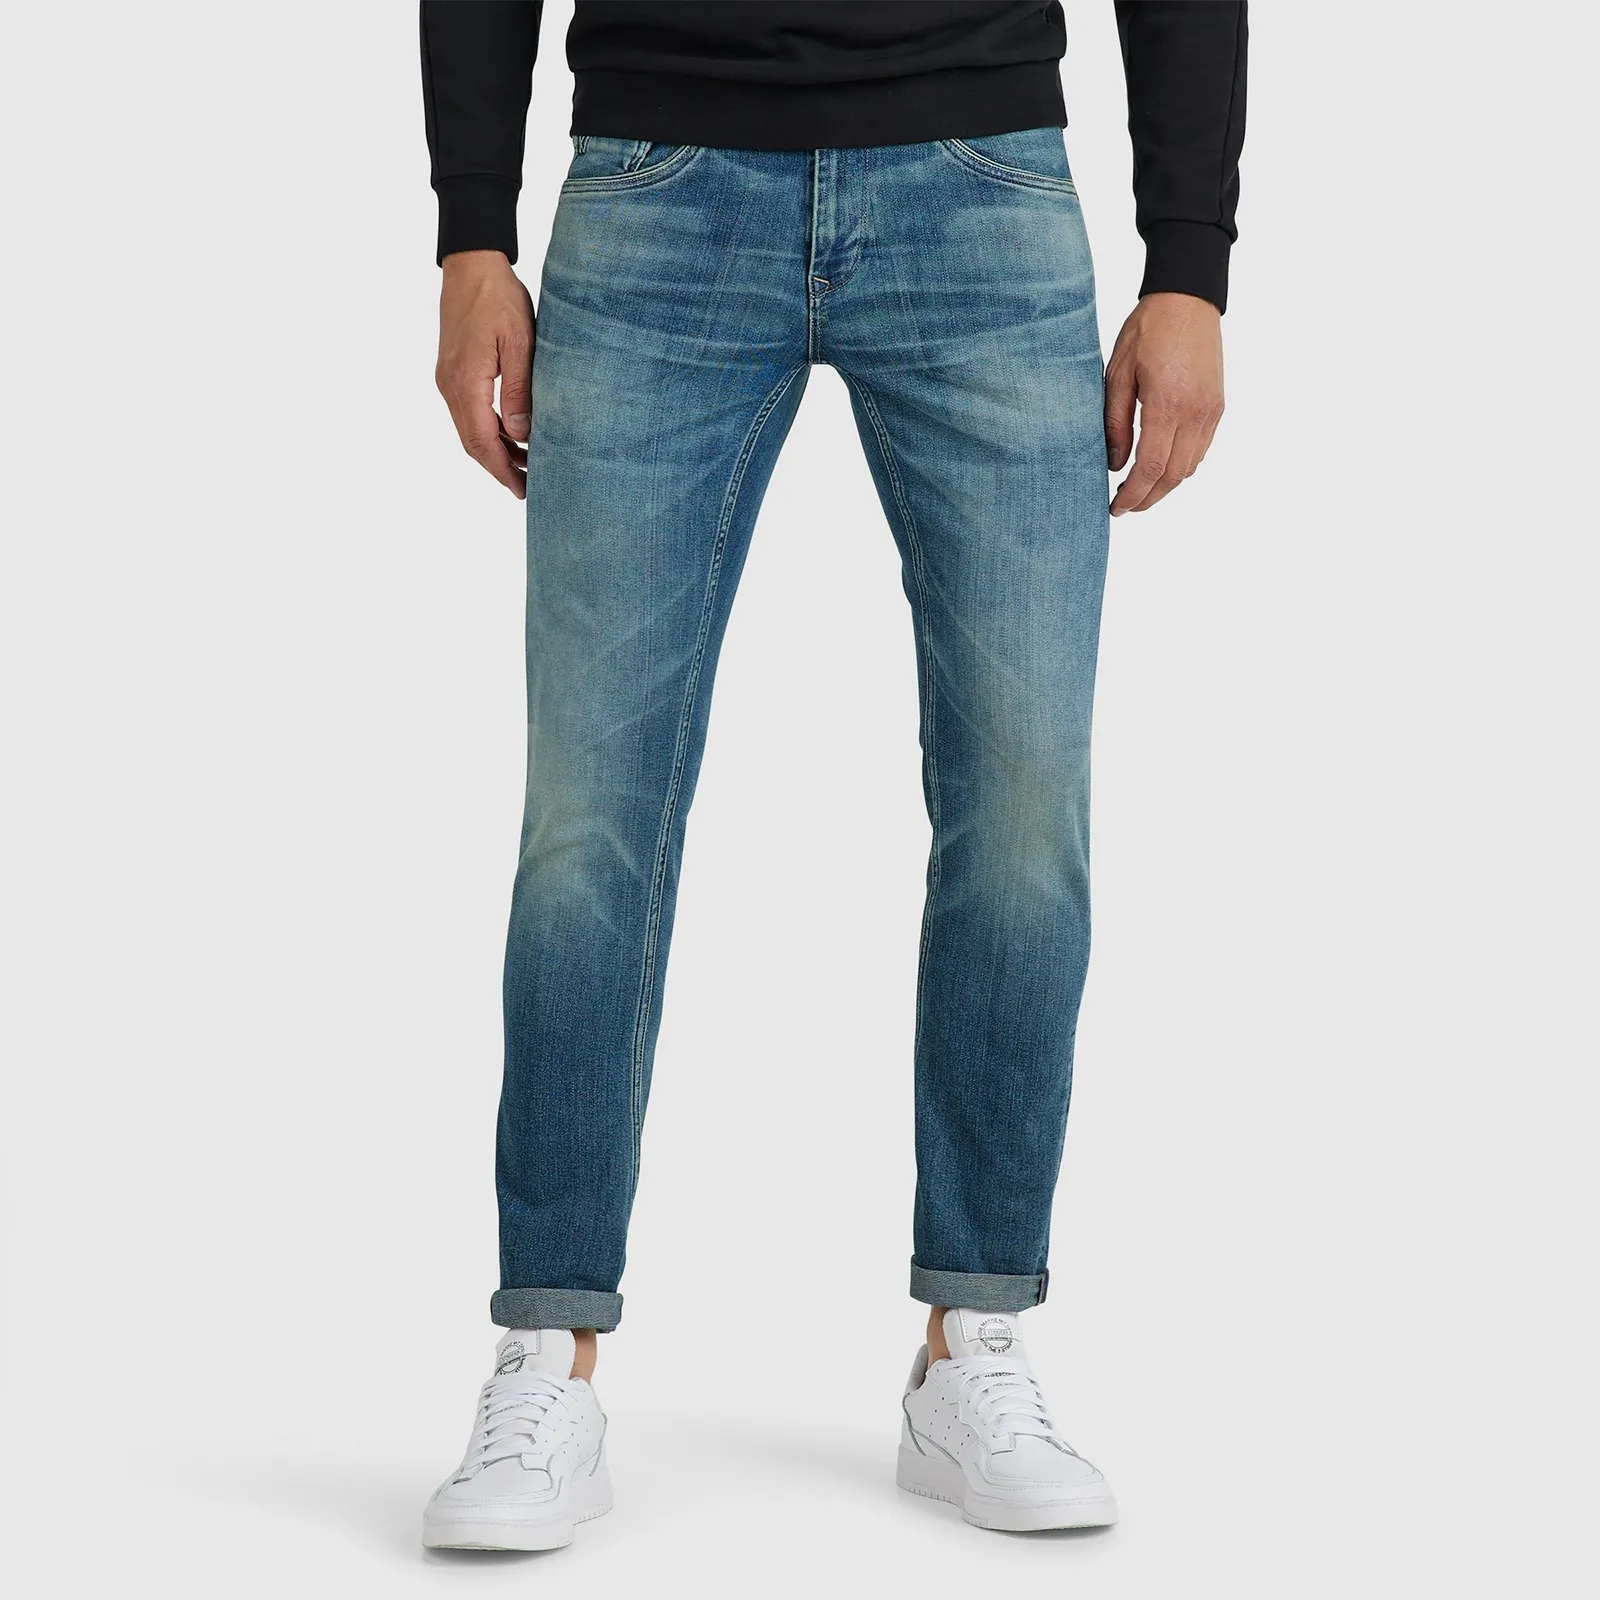 Slim-fit-Jeans PME LEGEND "Legend XV Denim" Gr. 38, Länge 32, blau (dirty wash) Herren Jeans Slim Fit